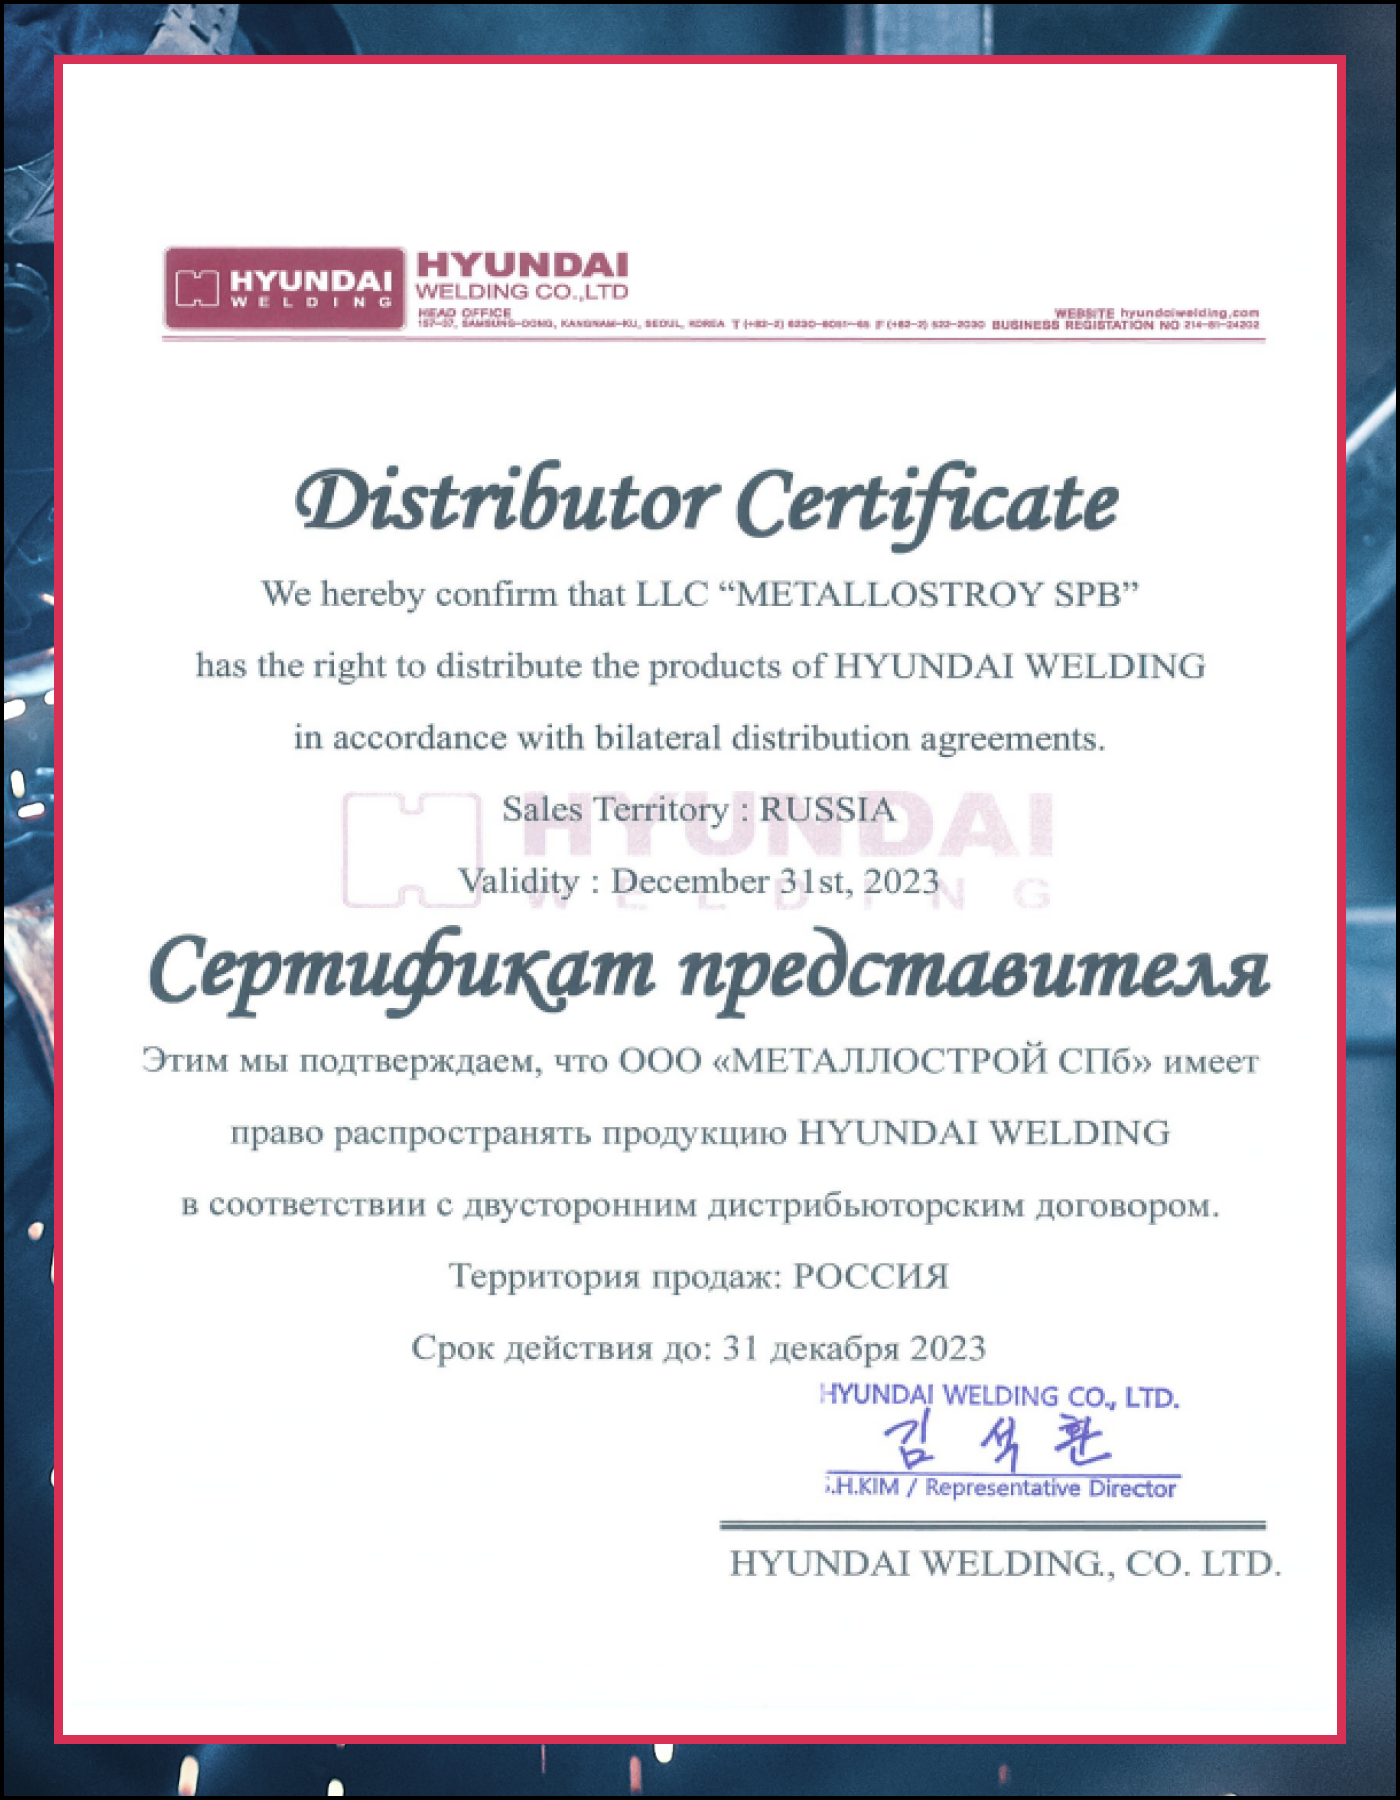 Электроды Hyundai Welding S-6013/OK-46 26мм 5кг/уп